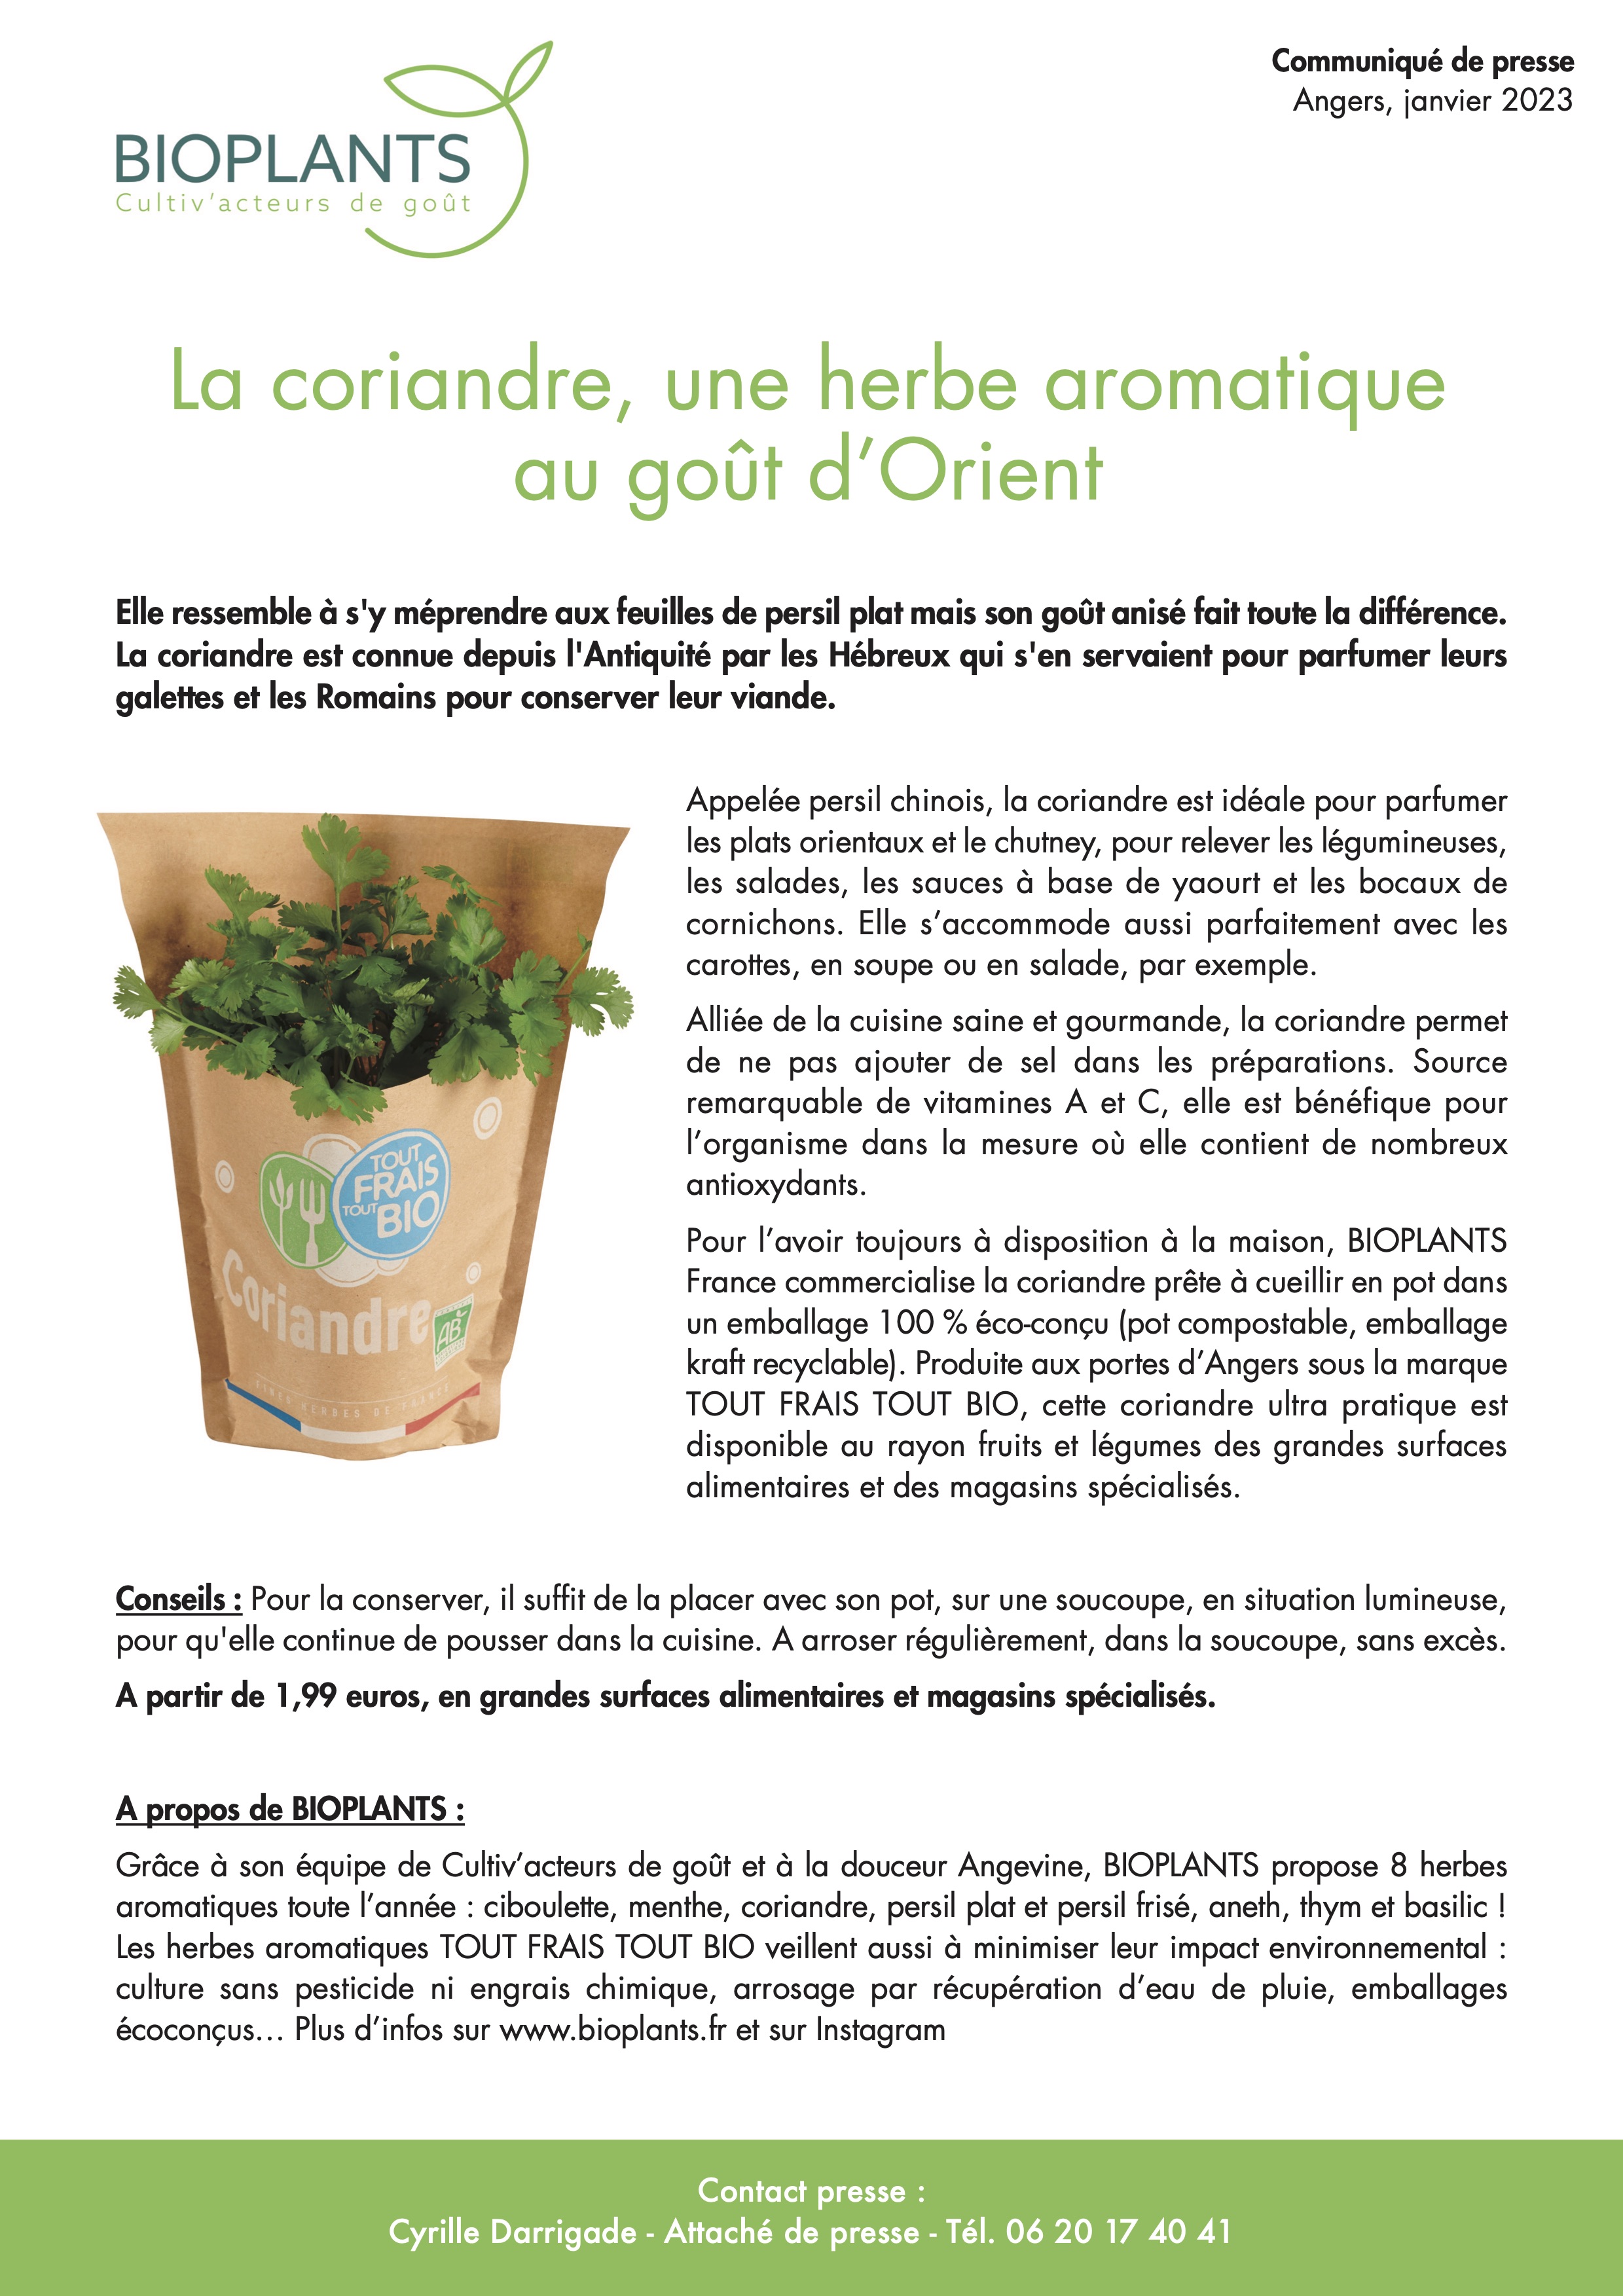 Communiqué Coriandre Bioplants